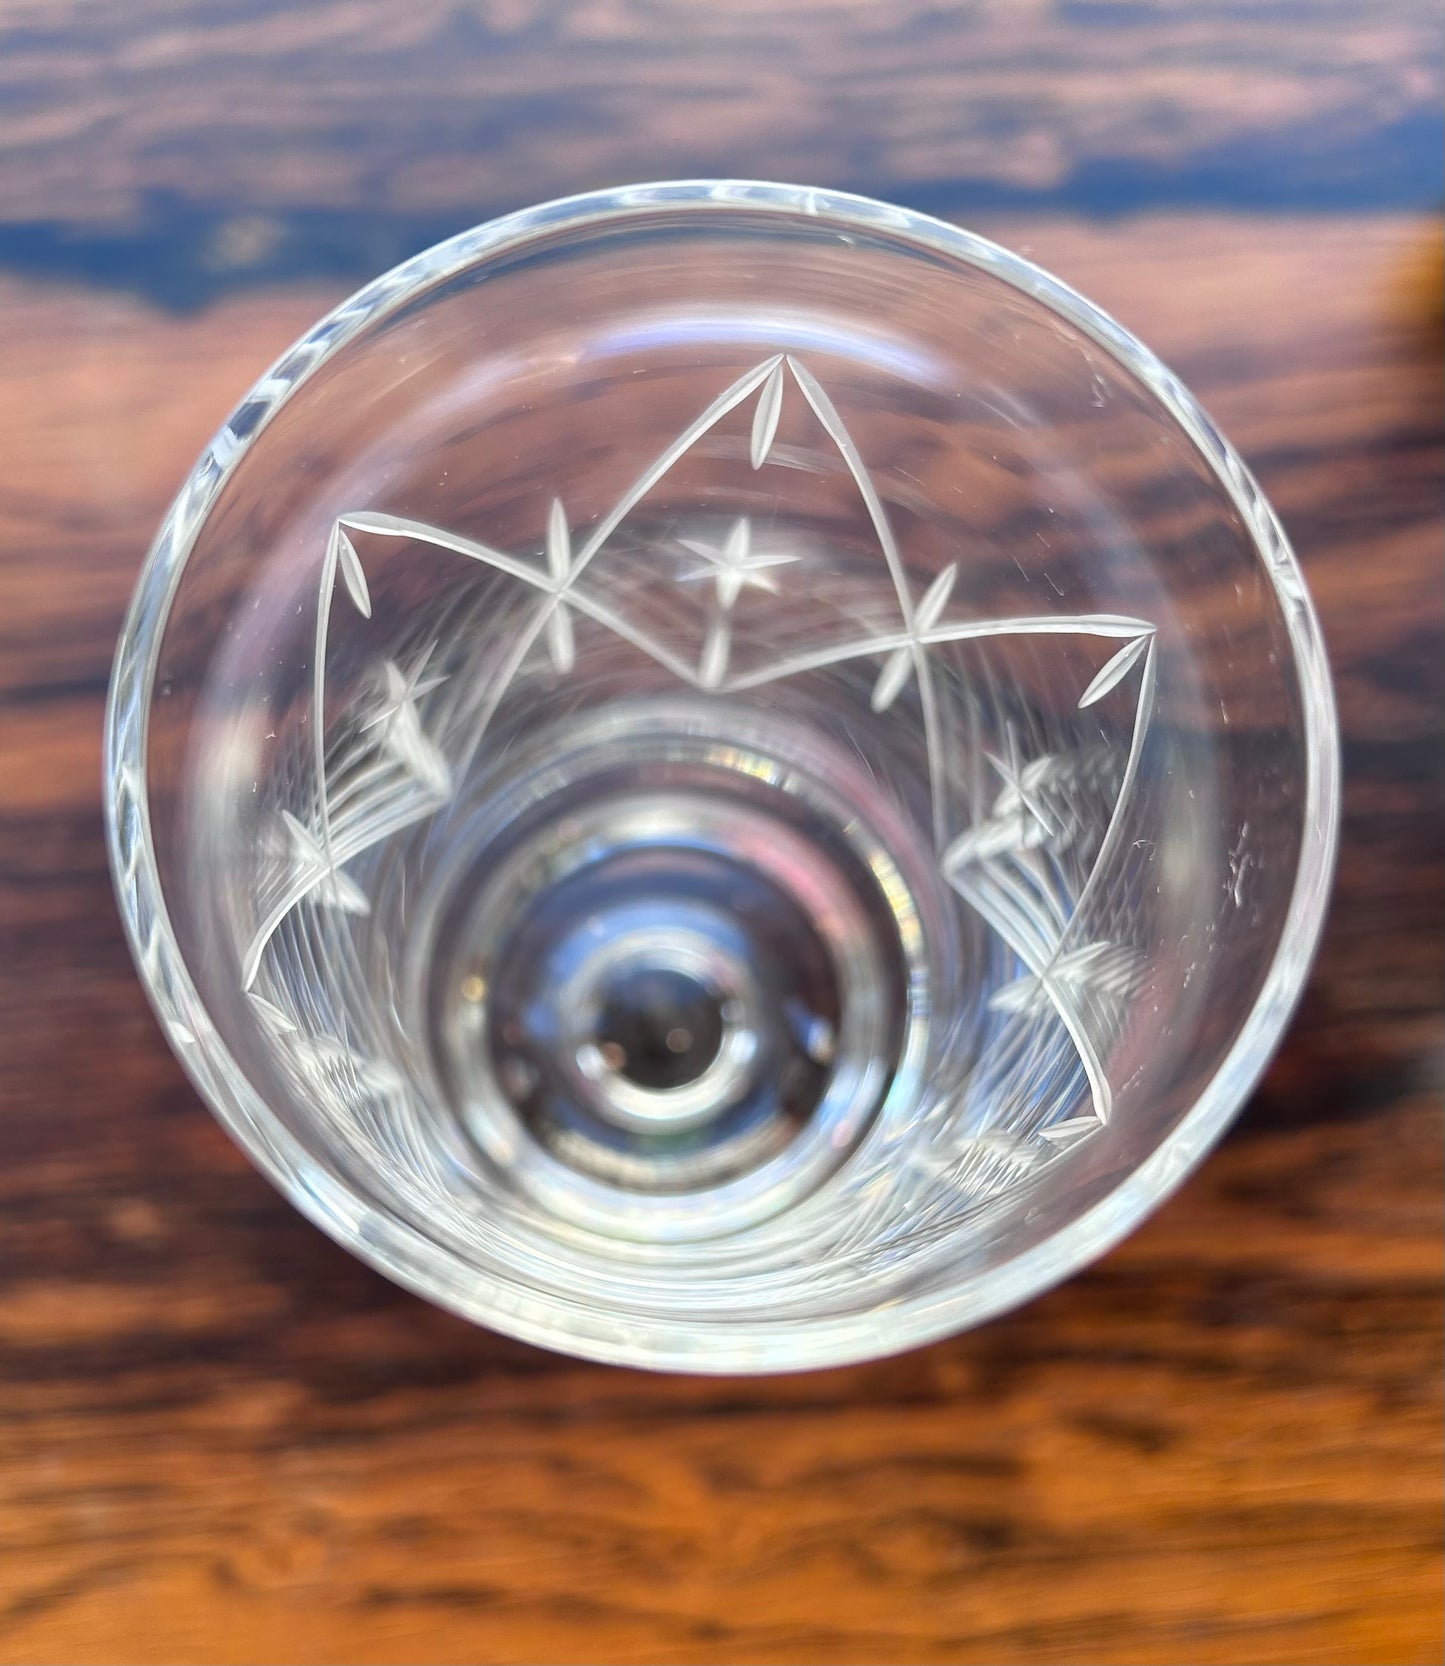 Kosta - Öl / Vinglas Kristallglas